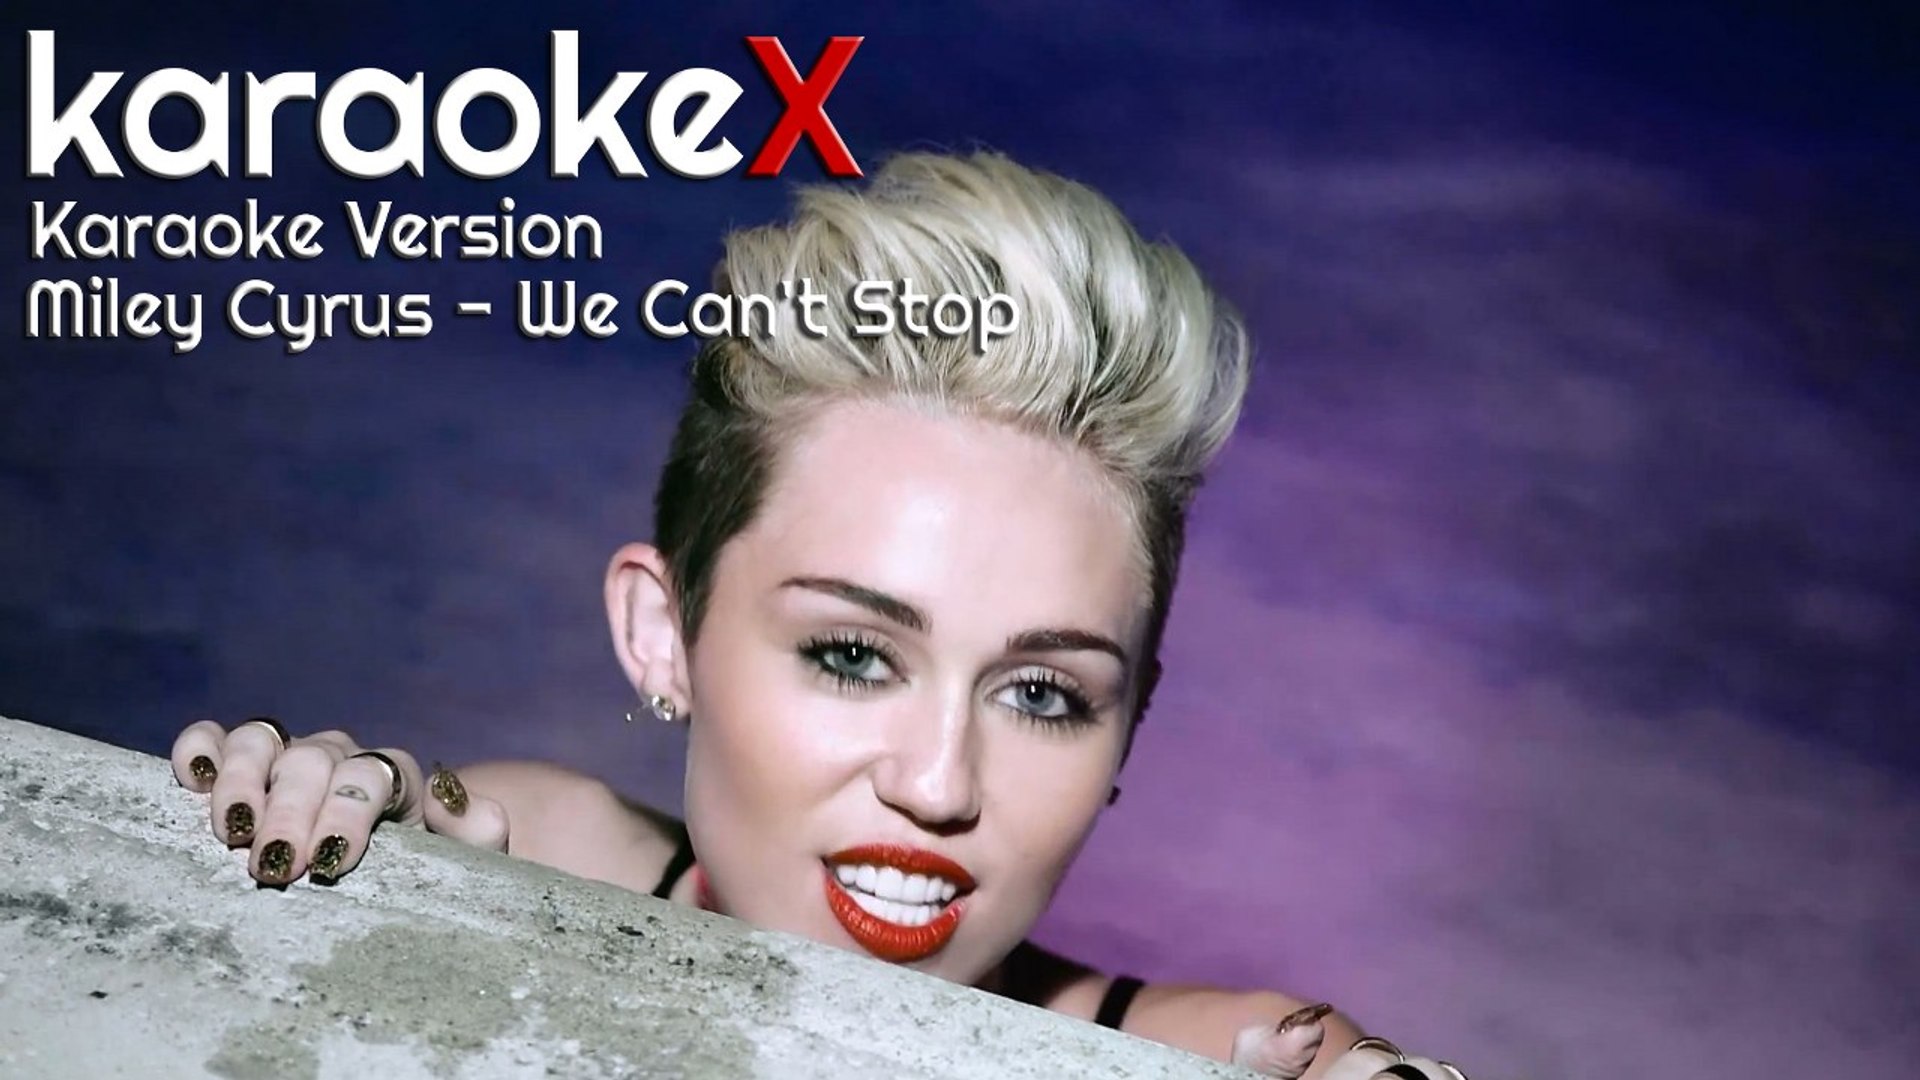 Miley Cyrus - We Can't Stop Karaoke Version (KaraokeX)